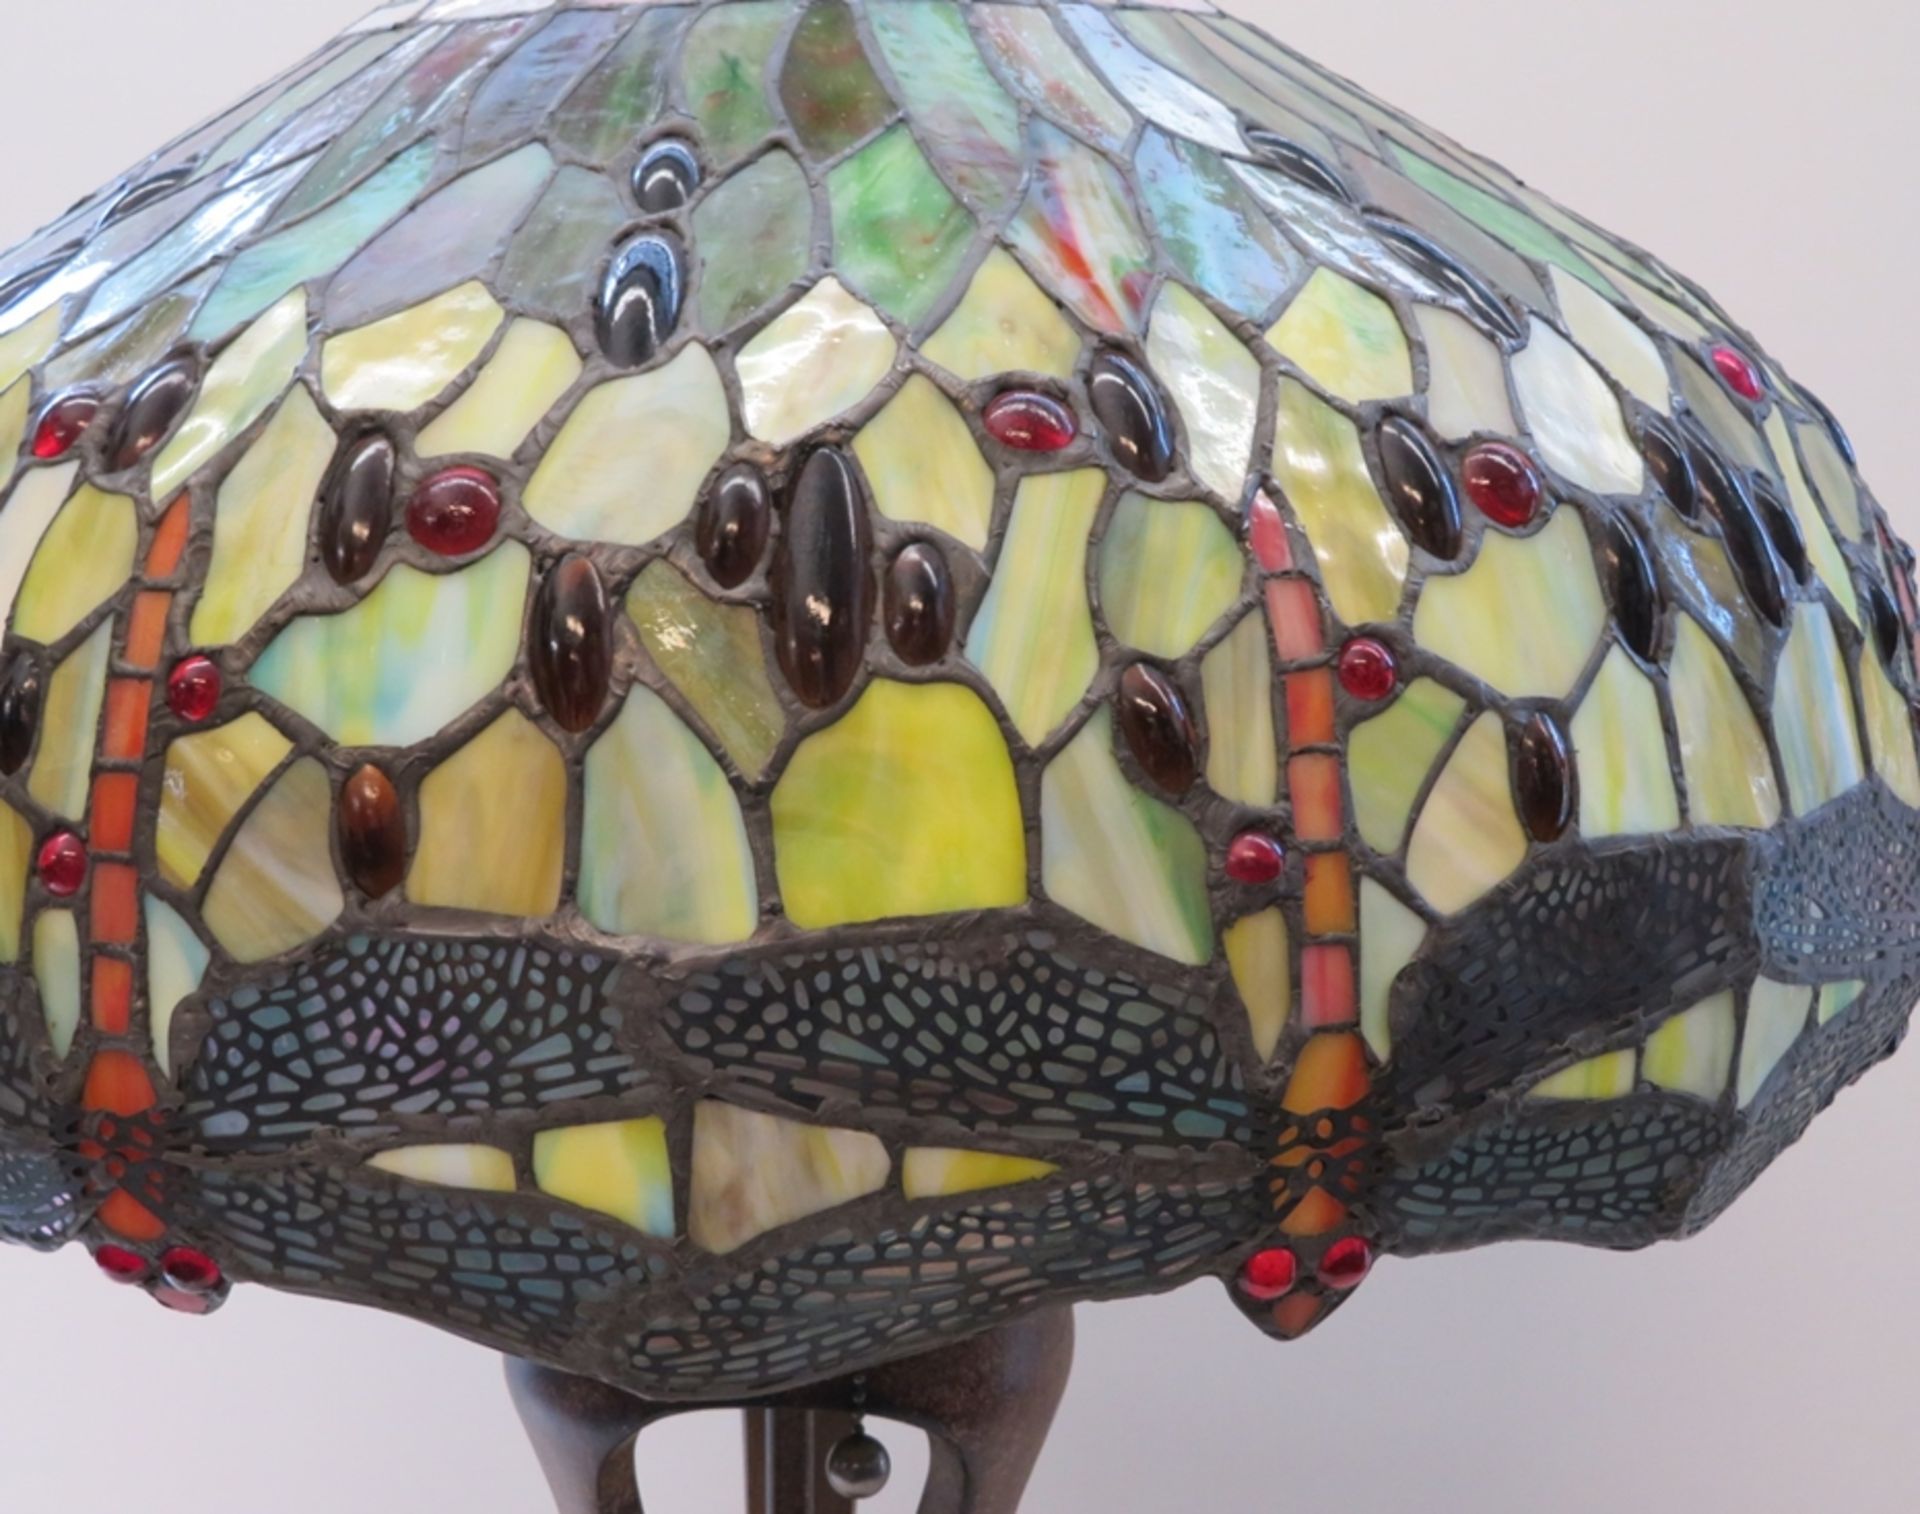 Tischlampe, Tiffany-Stil, Dragonfly, 2-flammig, farbige Bleiverglasung, bemalter Metallstandfuß, h  - Bild 2 aus 2